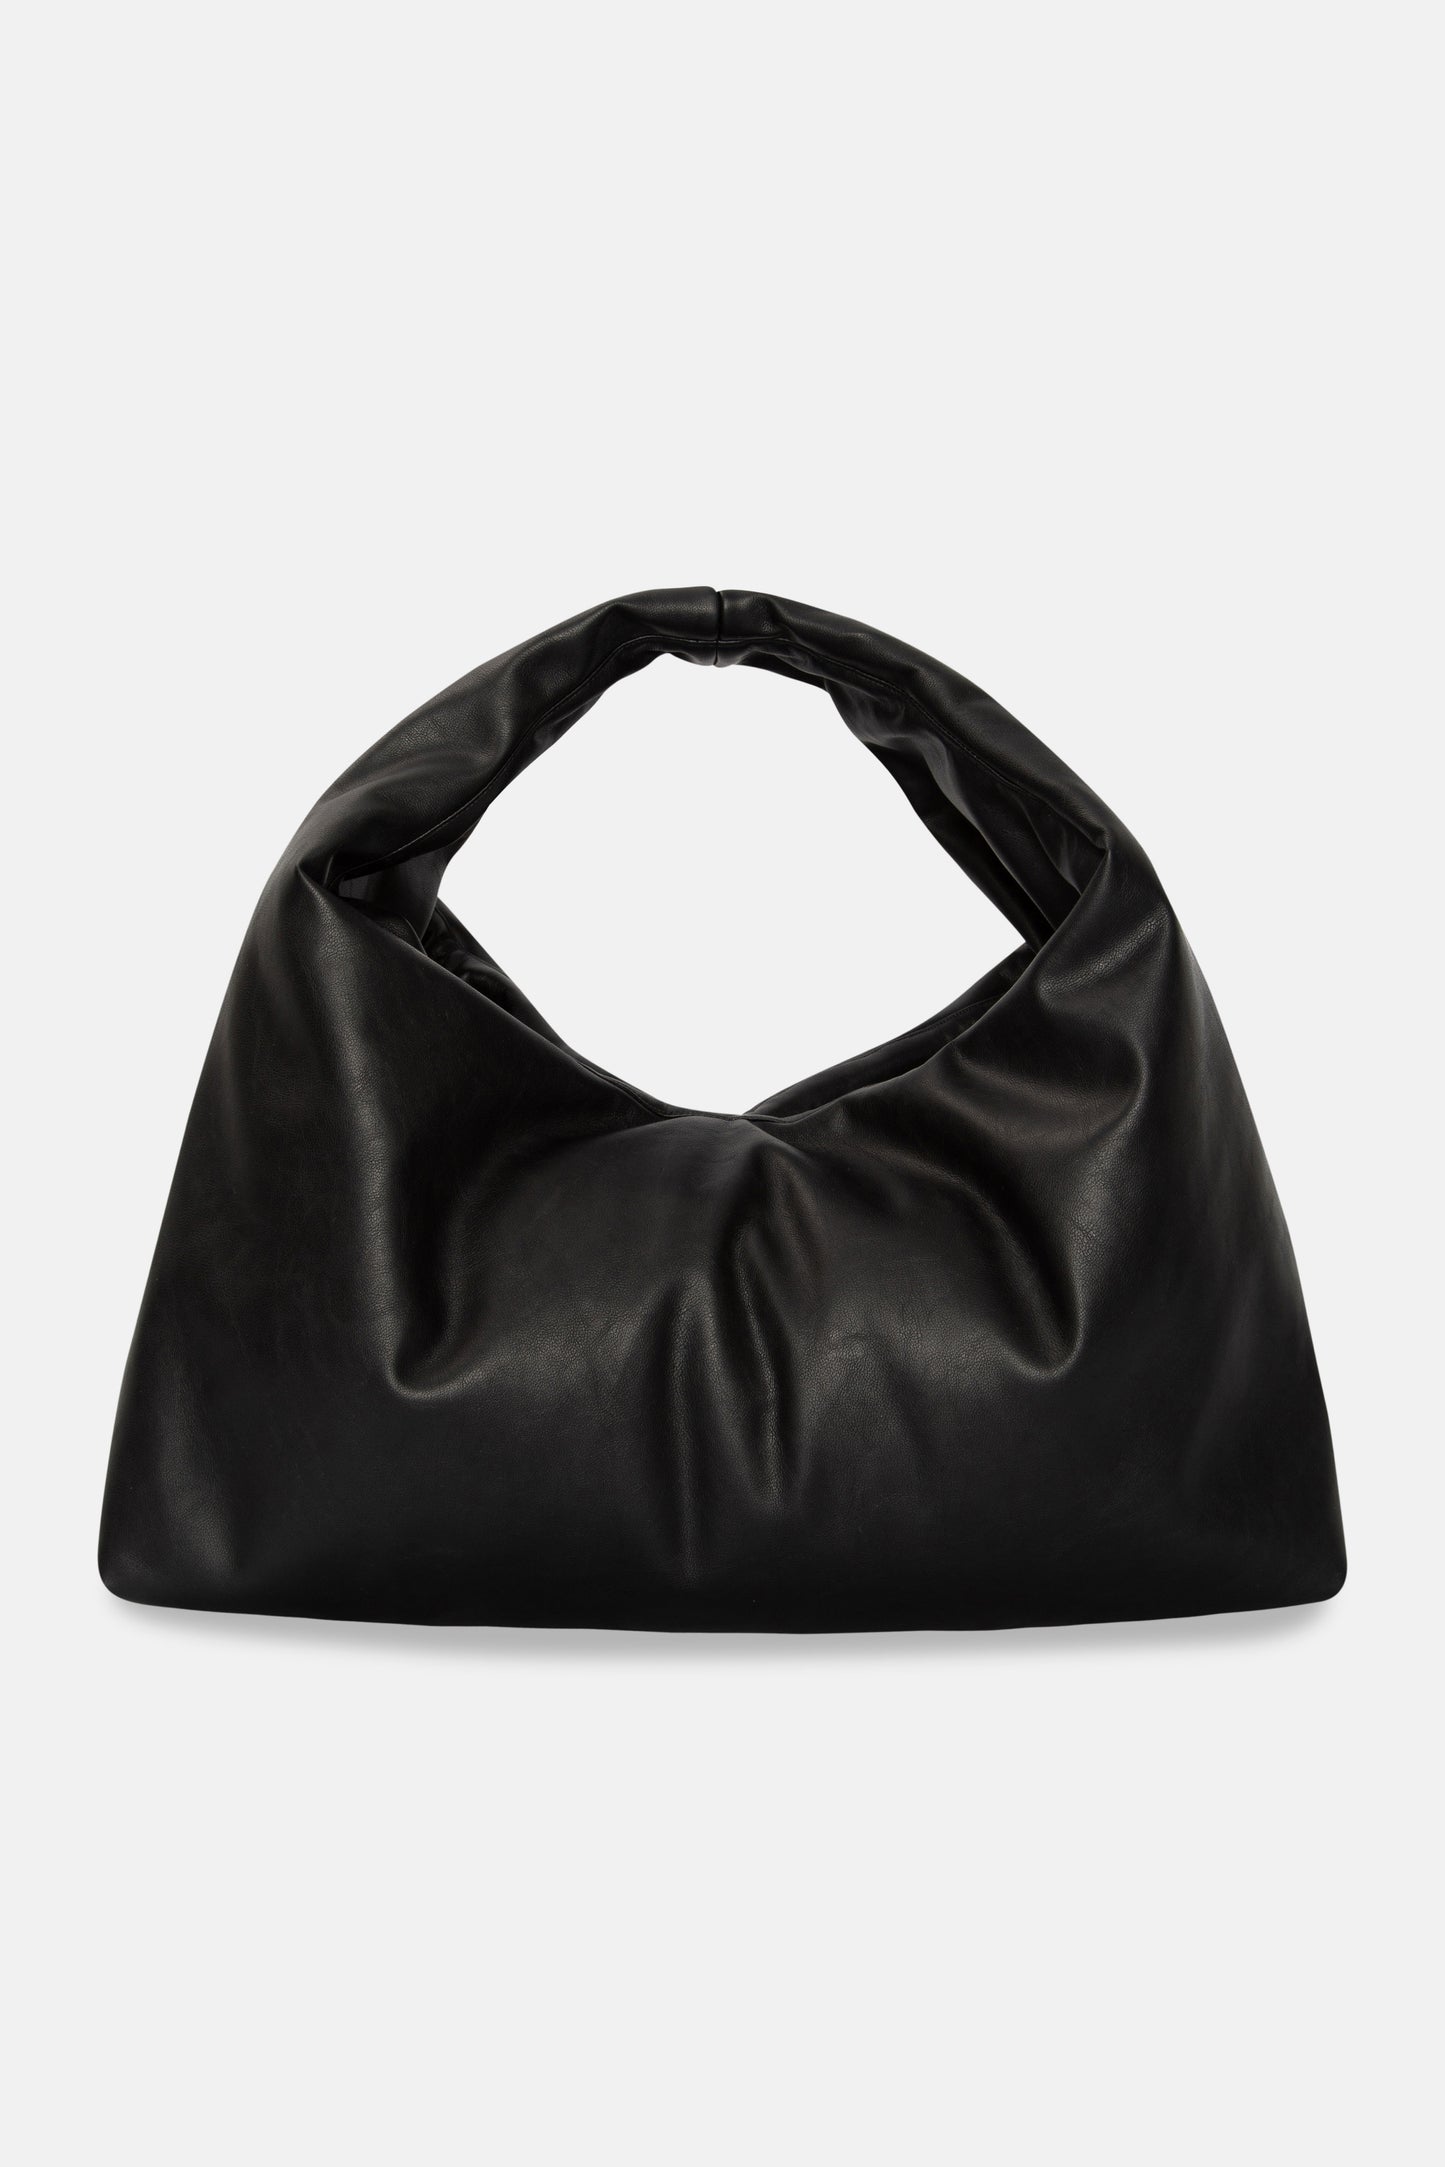 Black shoulder bag